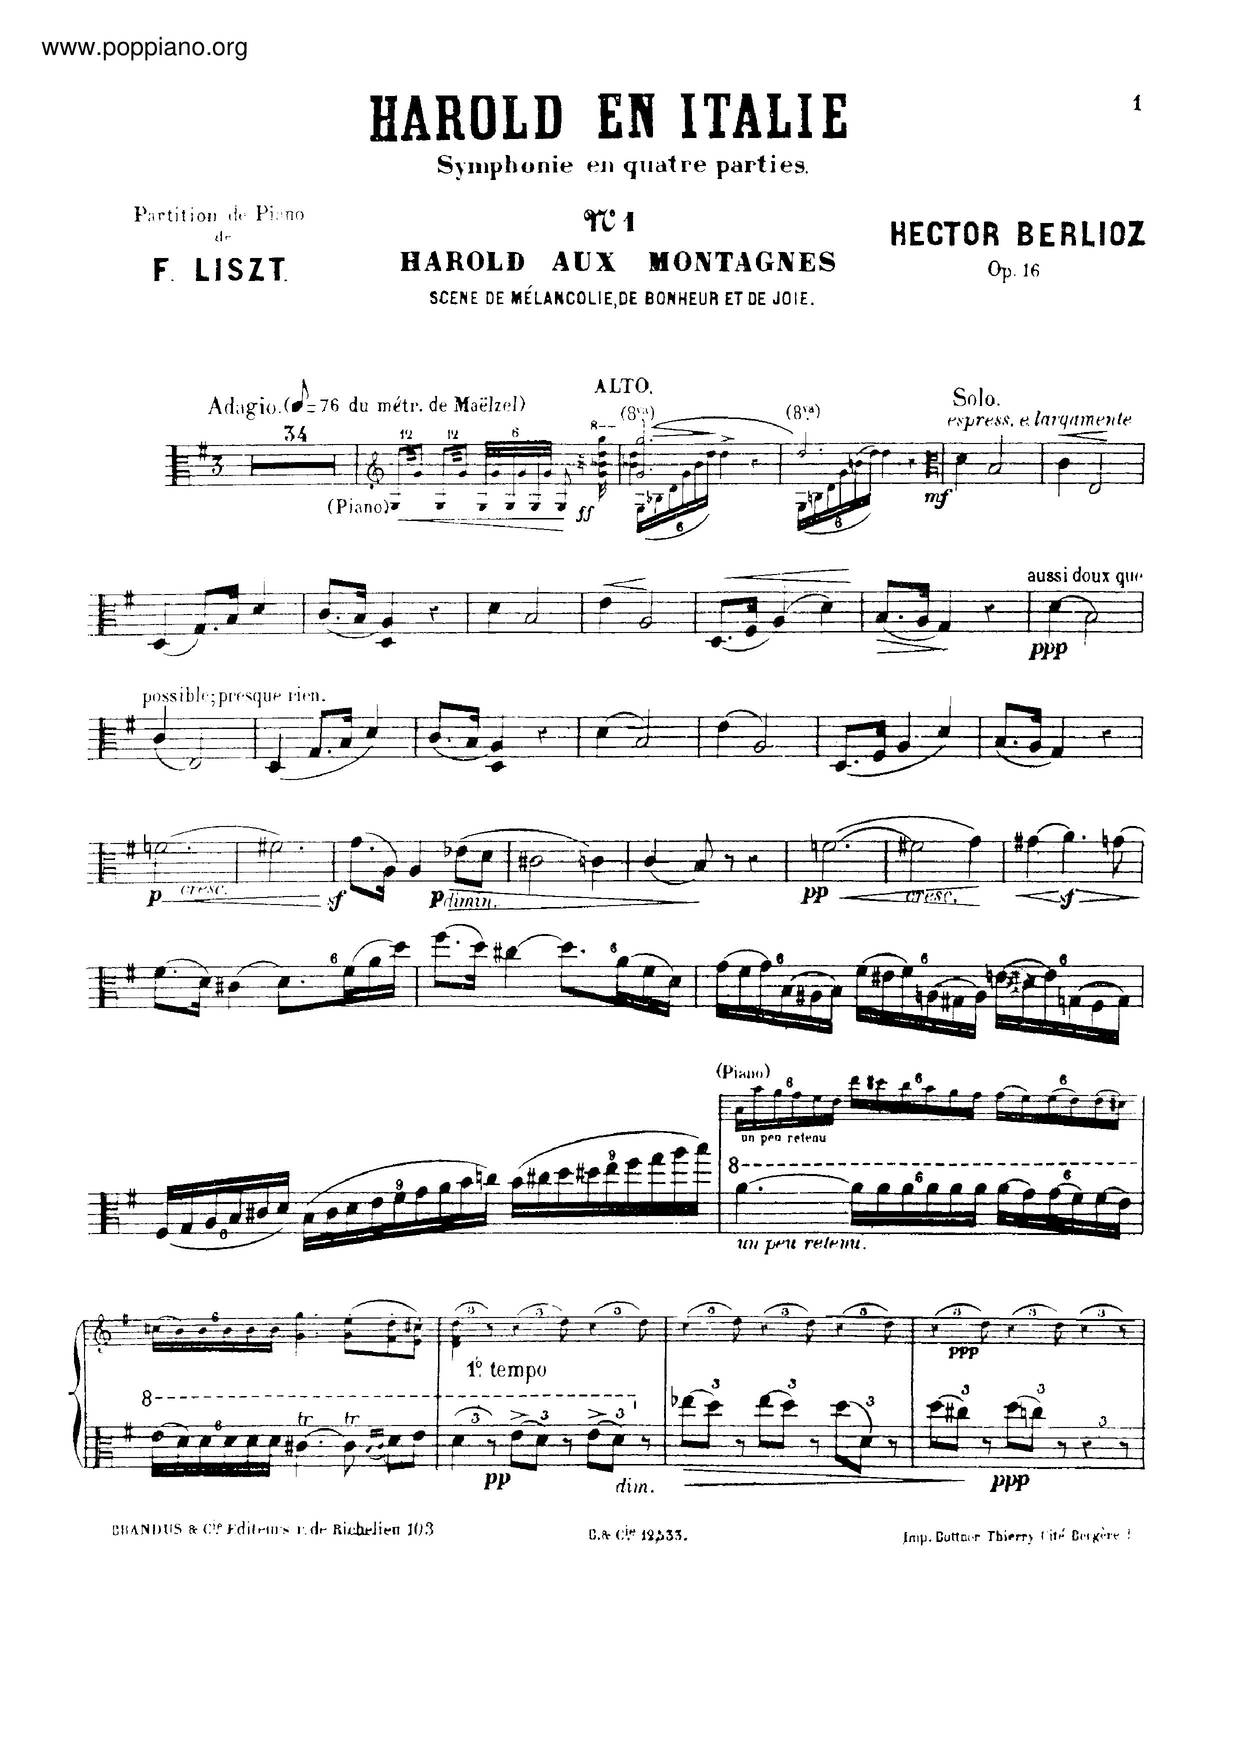 Harold En Italie By Berlioz, S.472 Score